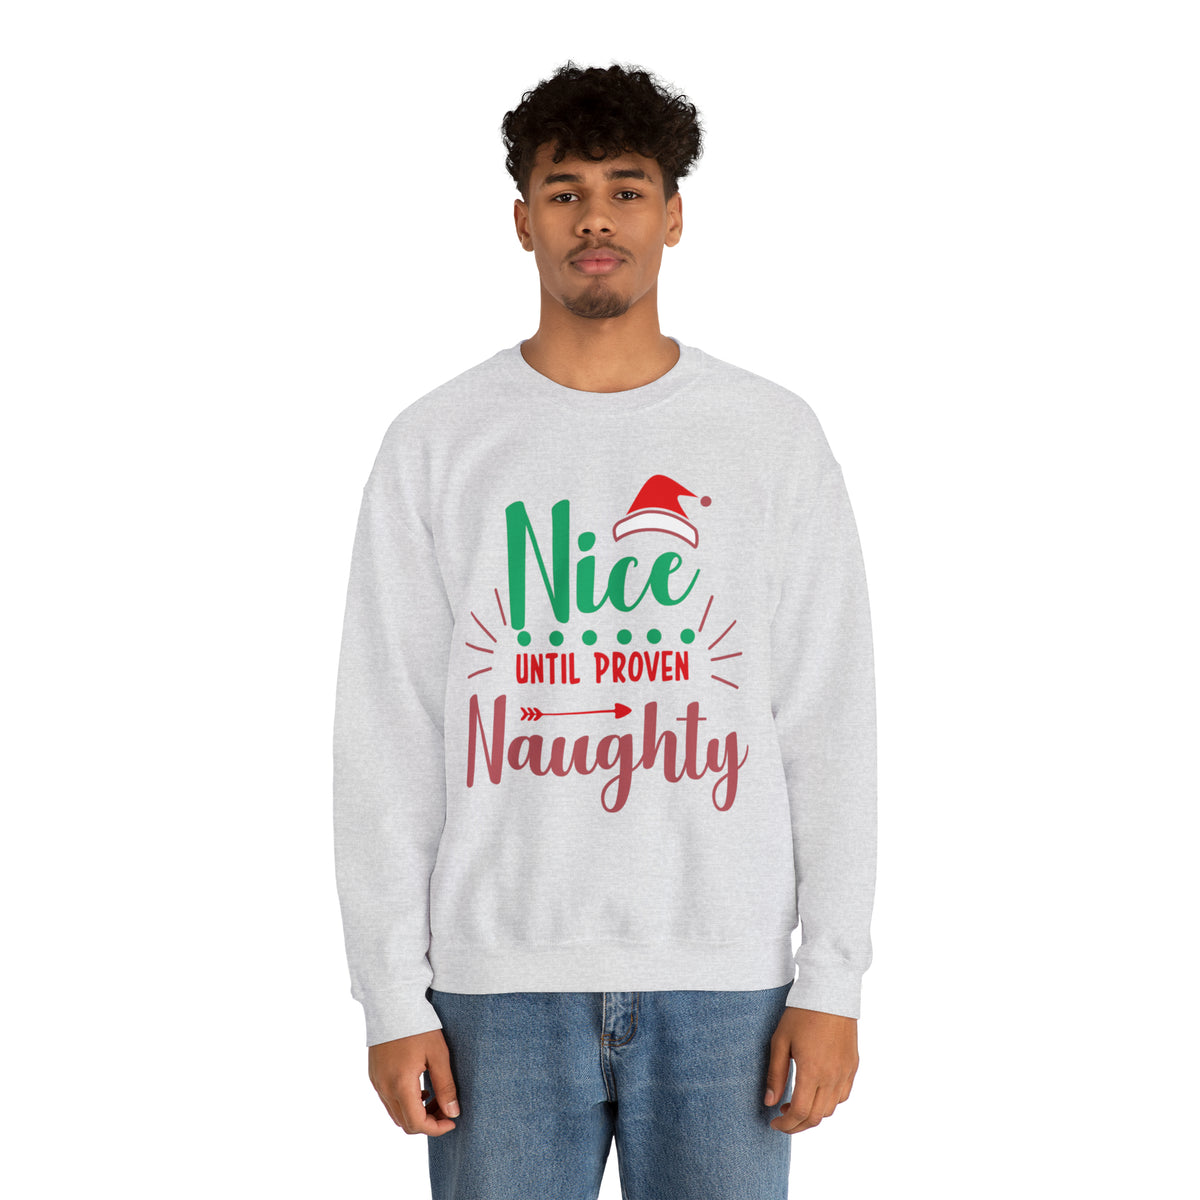 Nice Until Proven Naughty Christmas Sweatshirt, Christmas Sweater, Christmas Party Outfit, Holiday Gifts, Funny Christmas Sweater, Ugly Sweater, Holiday Sweatshirt